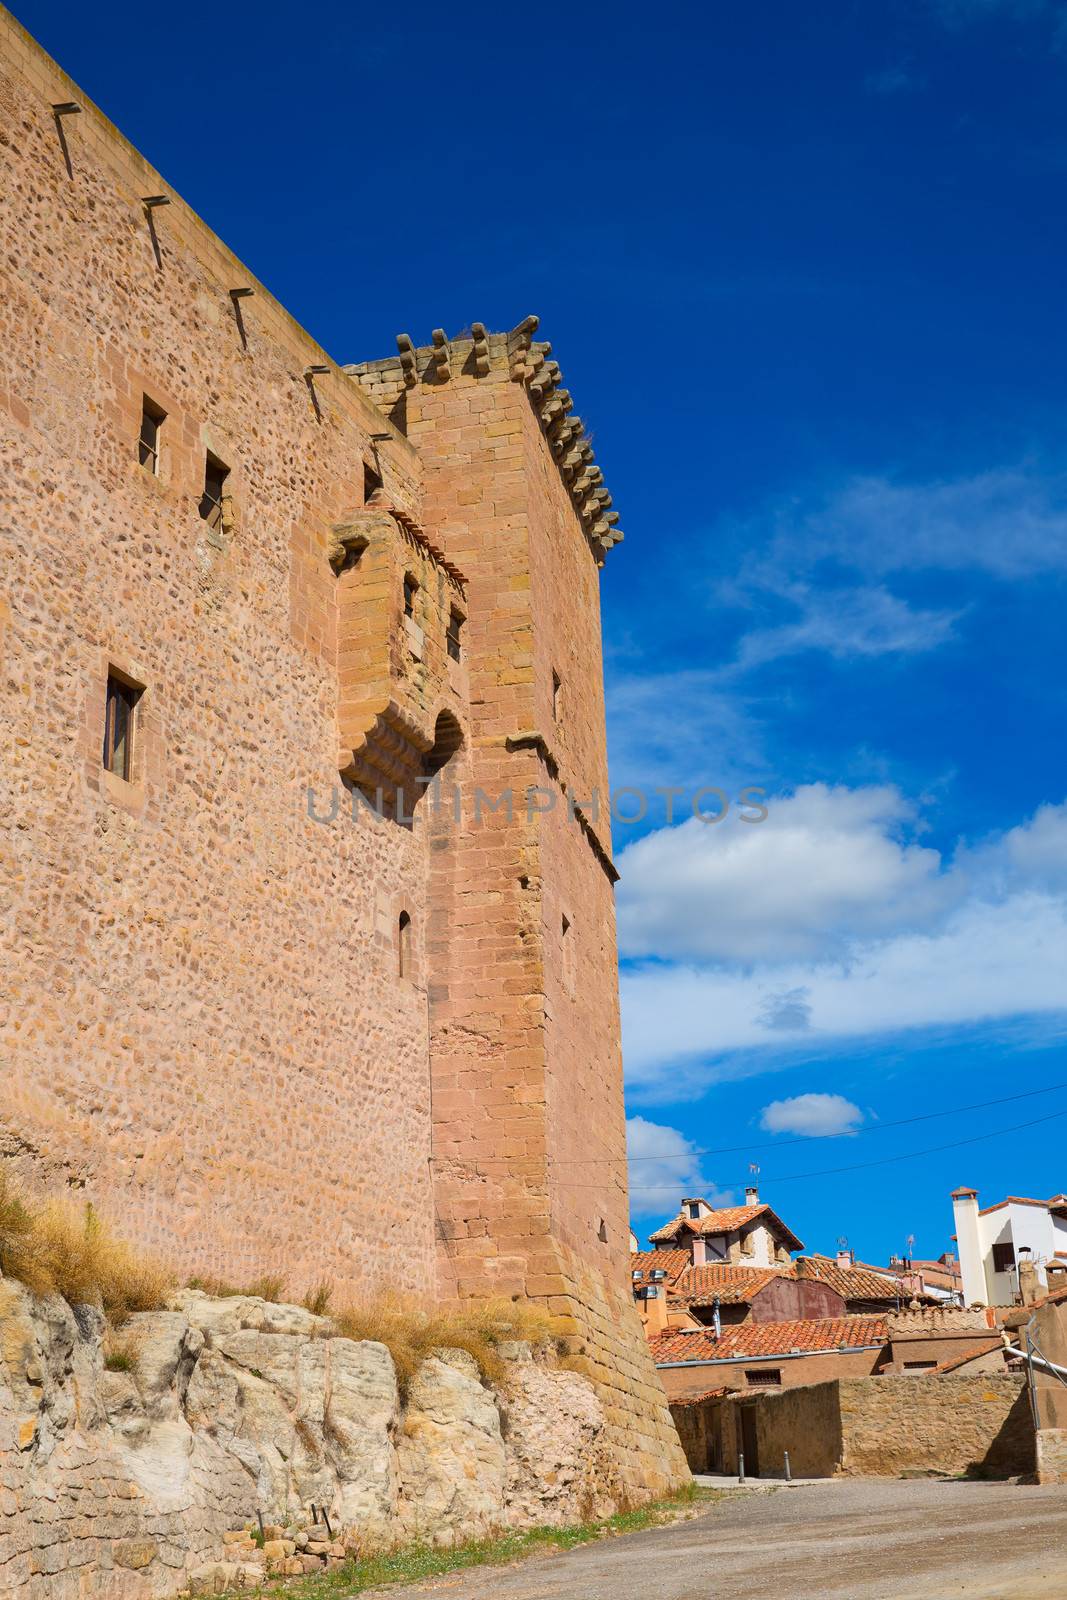 Mora de Rubielos Teruel Muslim Castle in Aragon Spain by lunamarina